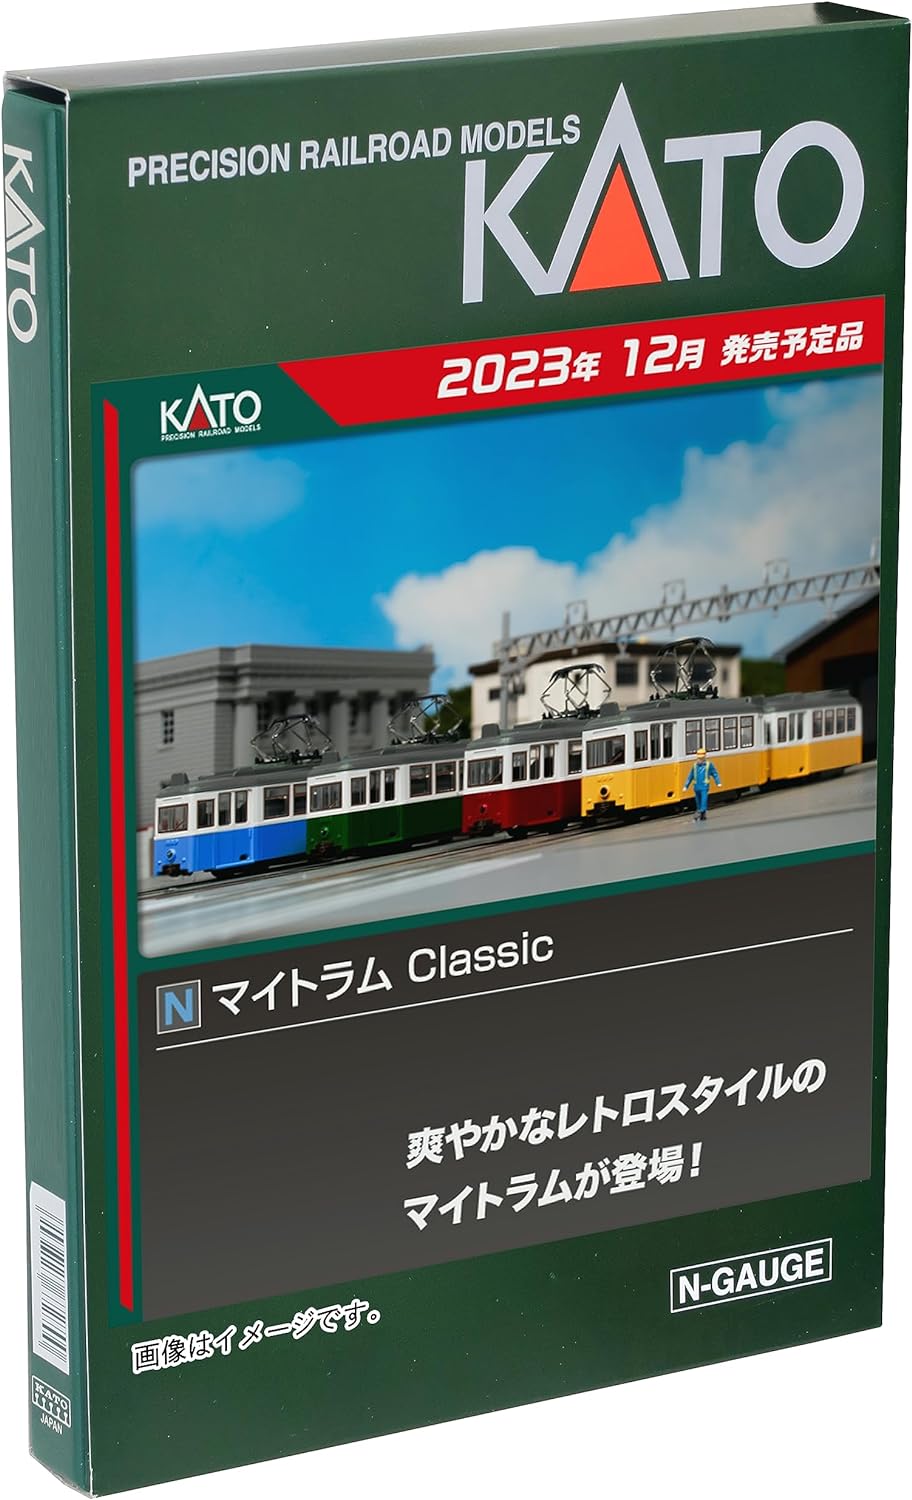 KATO 14-806-4  N Gauge Maitram Classic YELLOW Model Train - BanzaiHobby